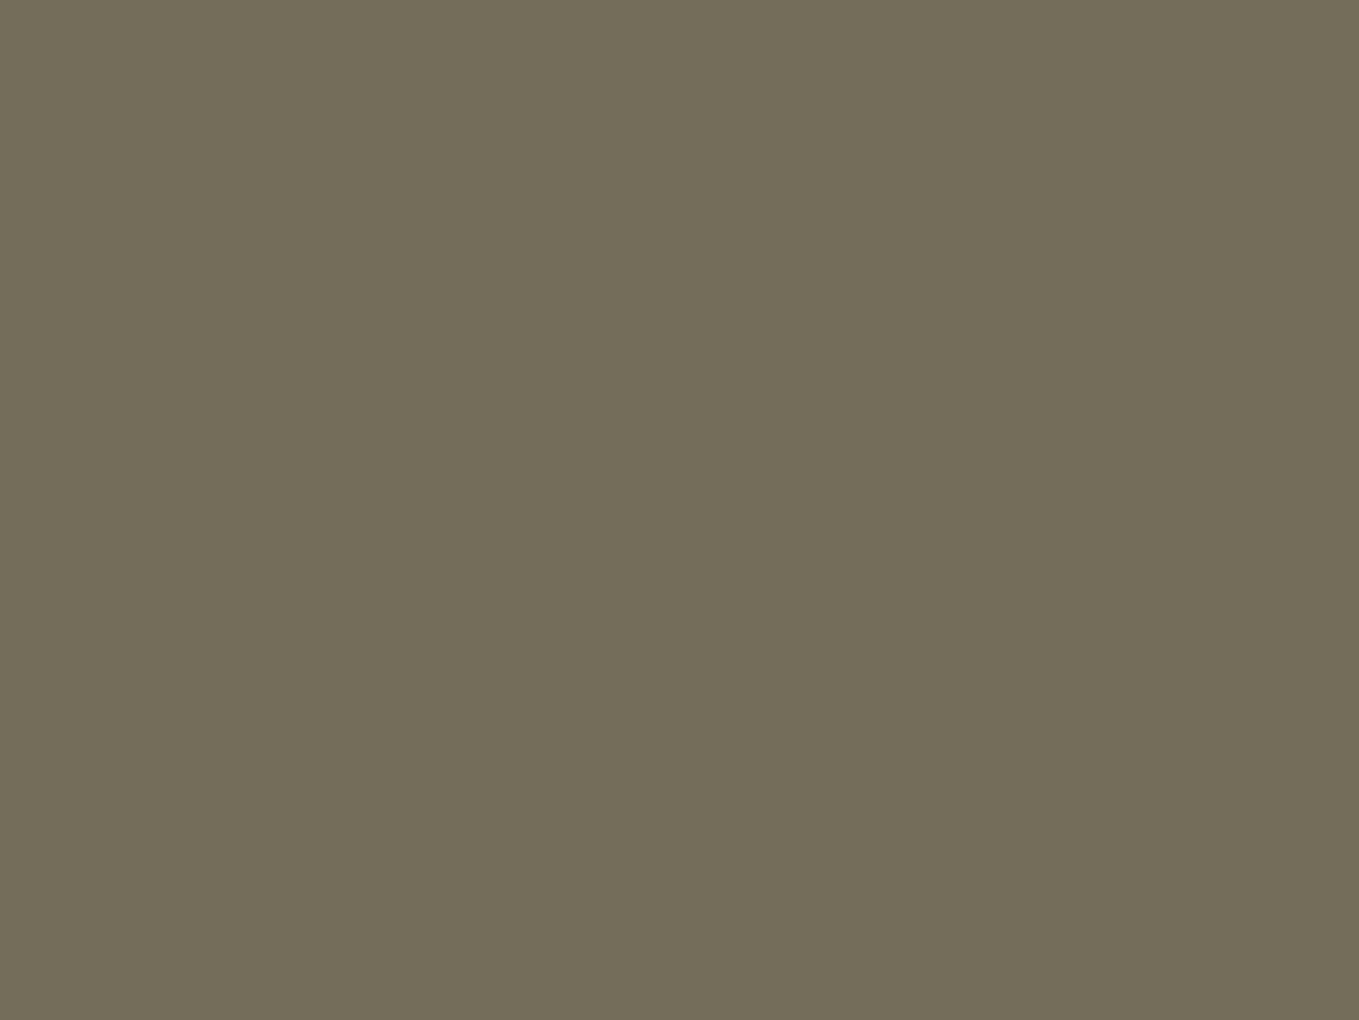 Гавриил Горелов. Ряженые в деревне (фрагмент). 1906. Одесский художественный музей, Одесса, Украина